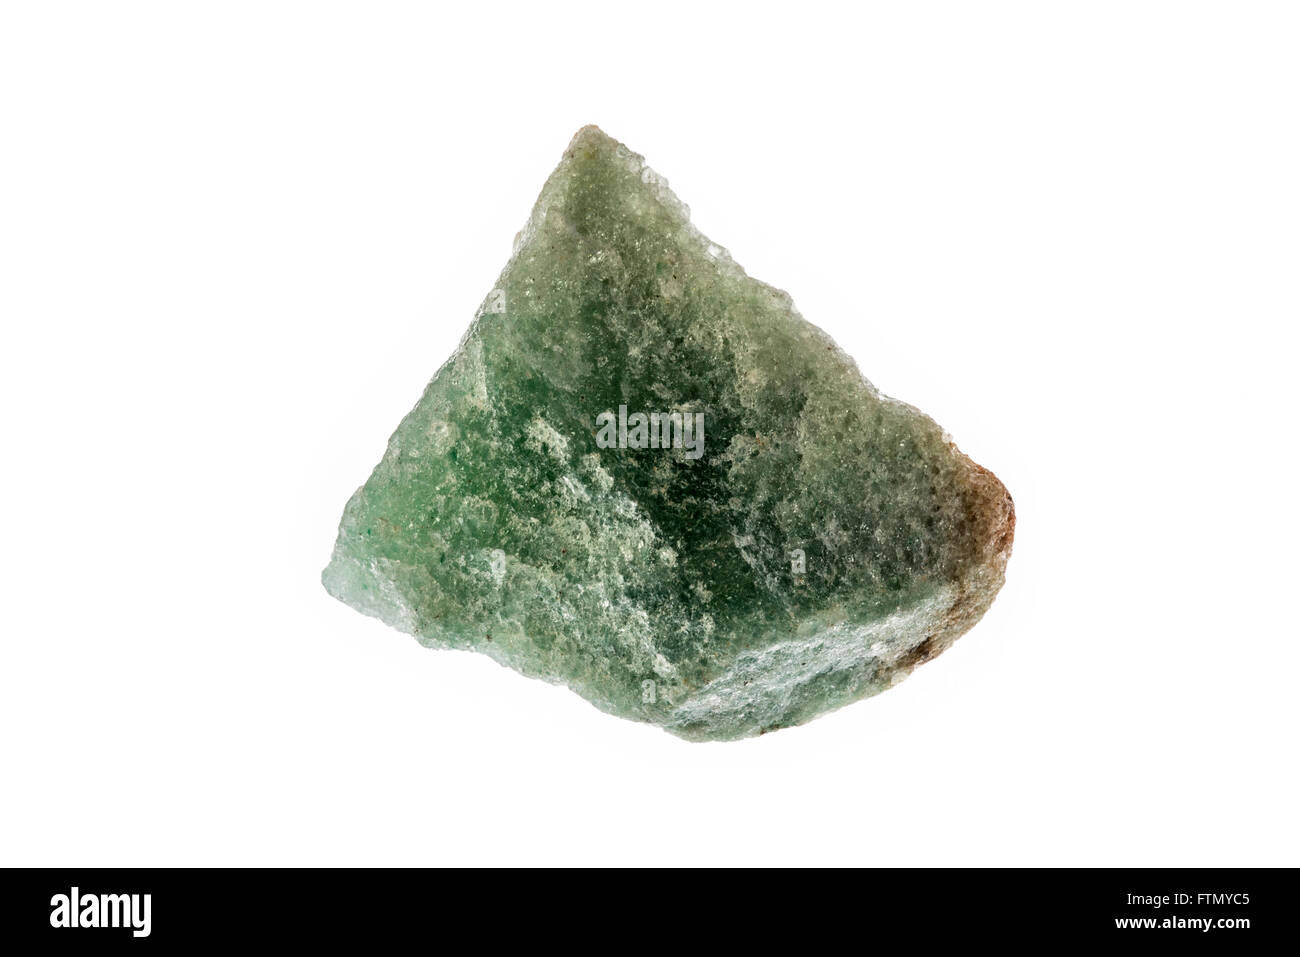 Aventurine verte - Spécimen de quartz, caractérisé par sa translucidité et présence de platy inclusions minérales Banque D'Images